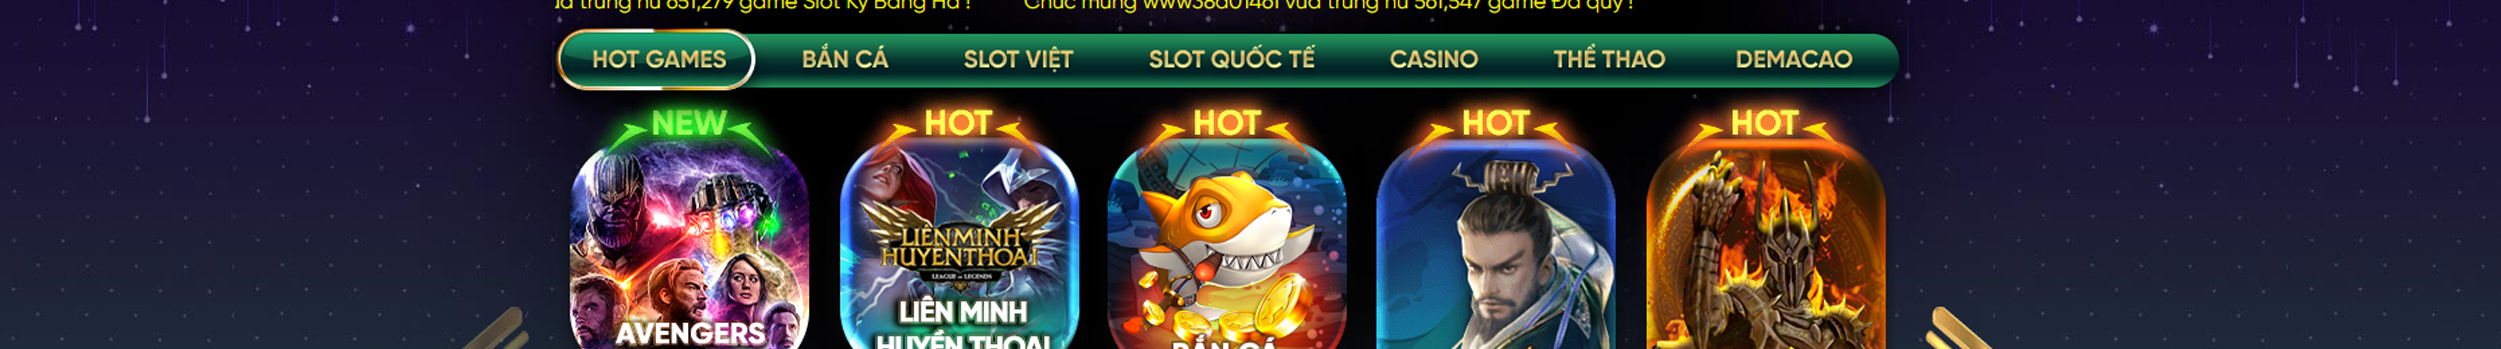 Game Bài Đổi Thưởng KingFun's profile banner